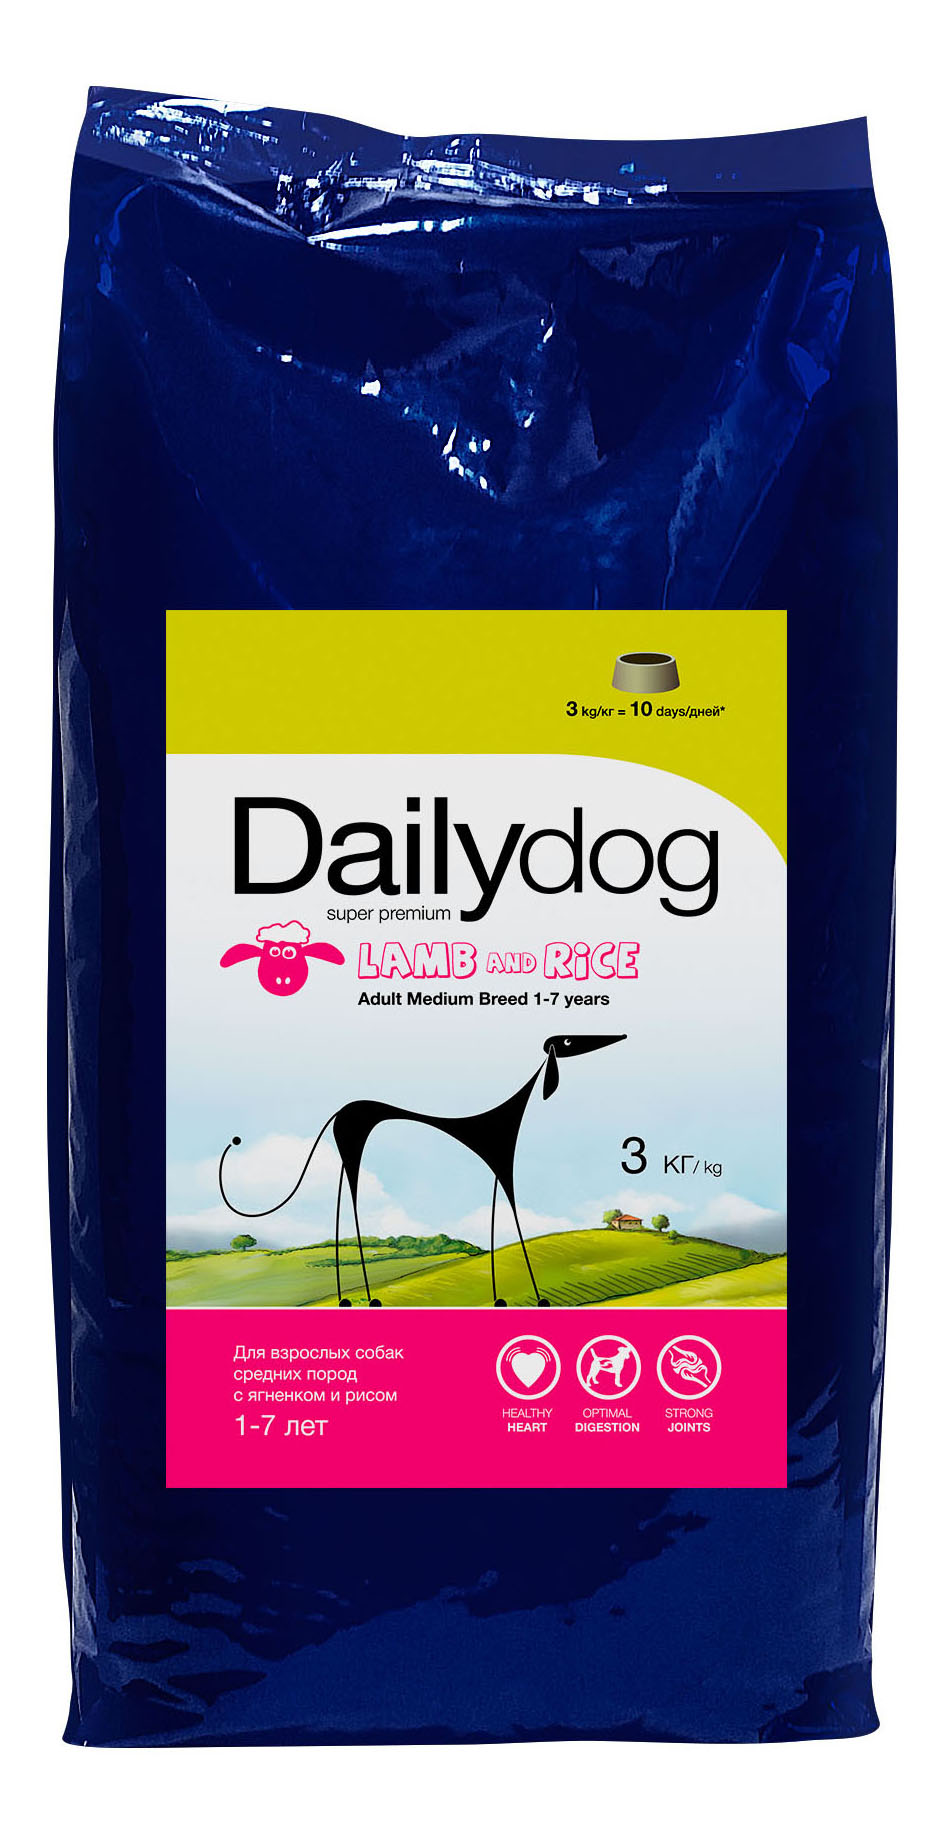 Сухой корм для собак Dailydog Adult Medium Breed, для средних пород, ягненок и рис, 3кг